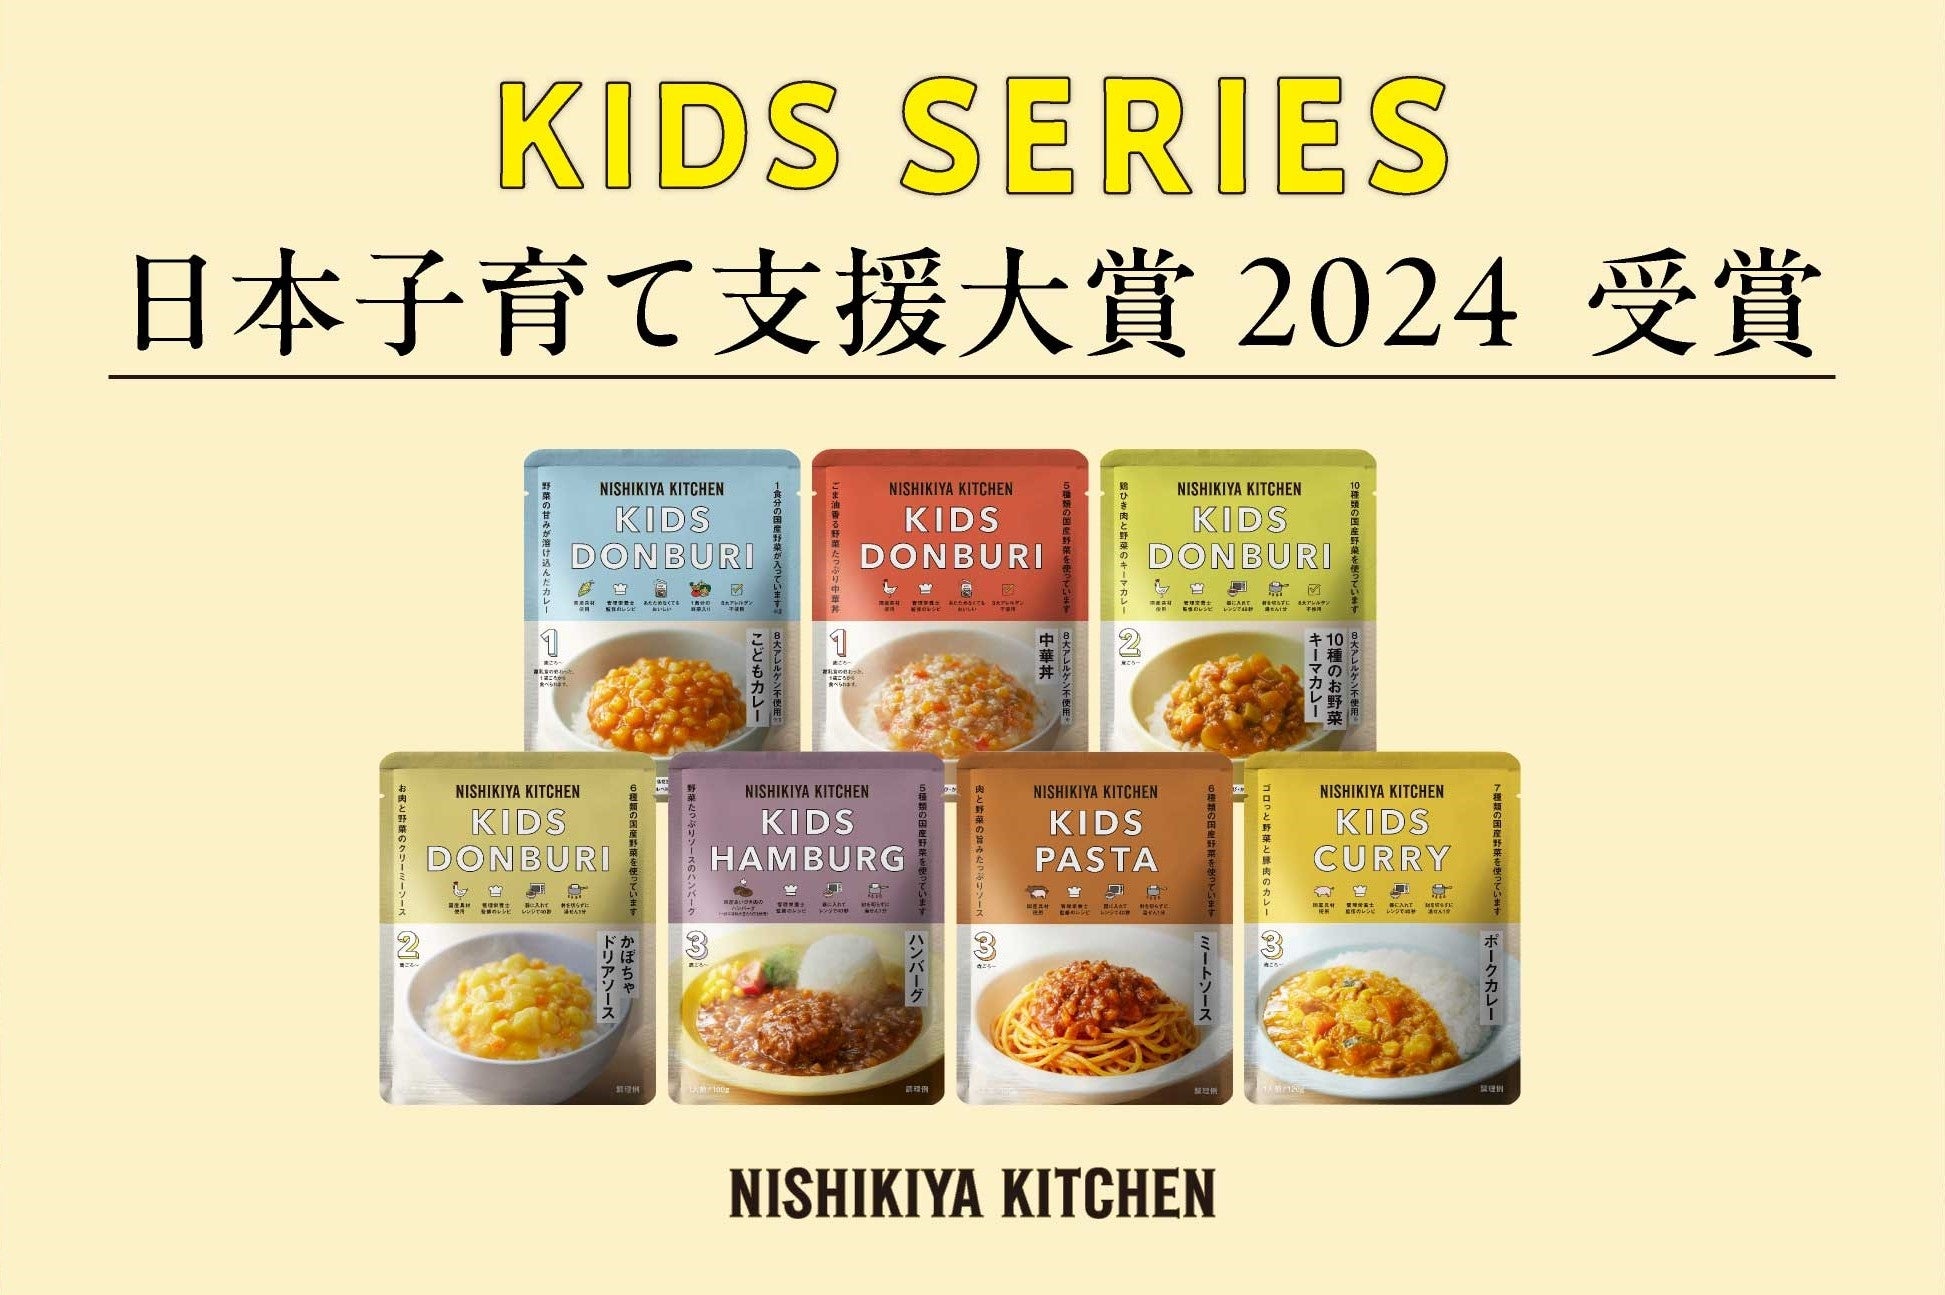 レトルト幼児食不足を解消するニシキヤキッチンのキッズシリーズが「第5回日本子育て支援大賞2024」を受賞